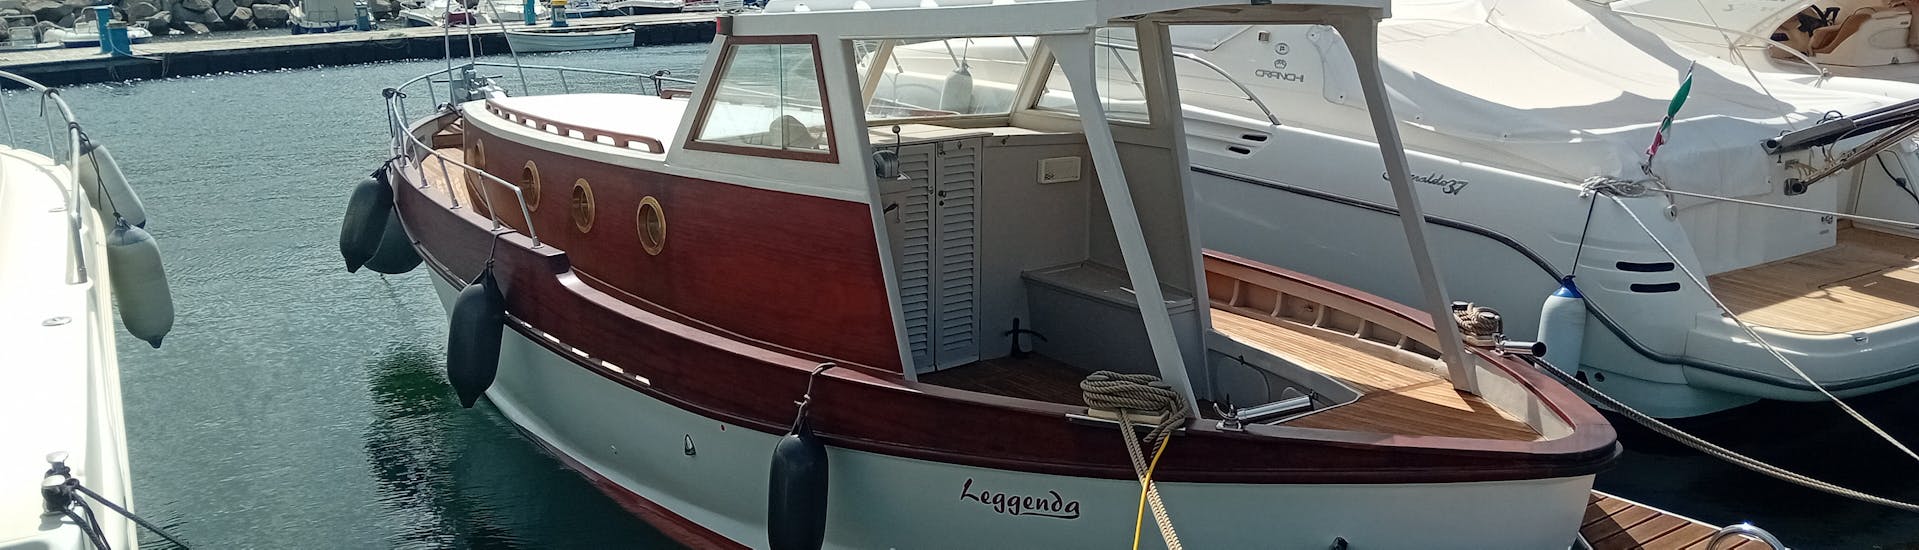 Gita giornaliera in barca lungo la costa di Cefalù con pranzo e snorkeling.